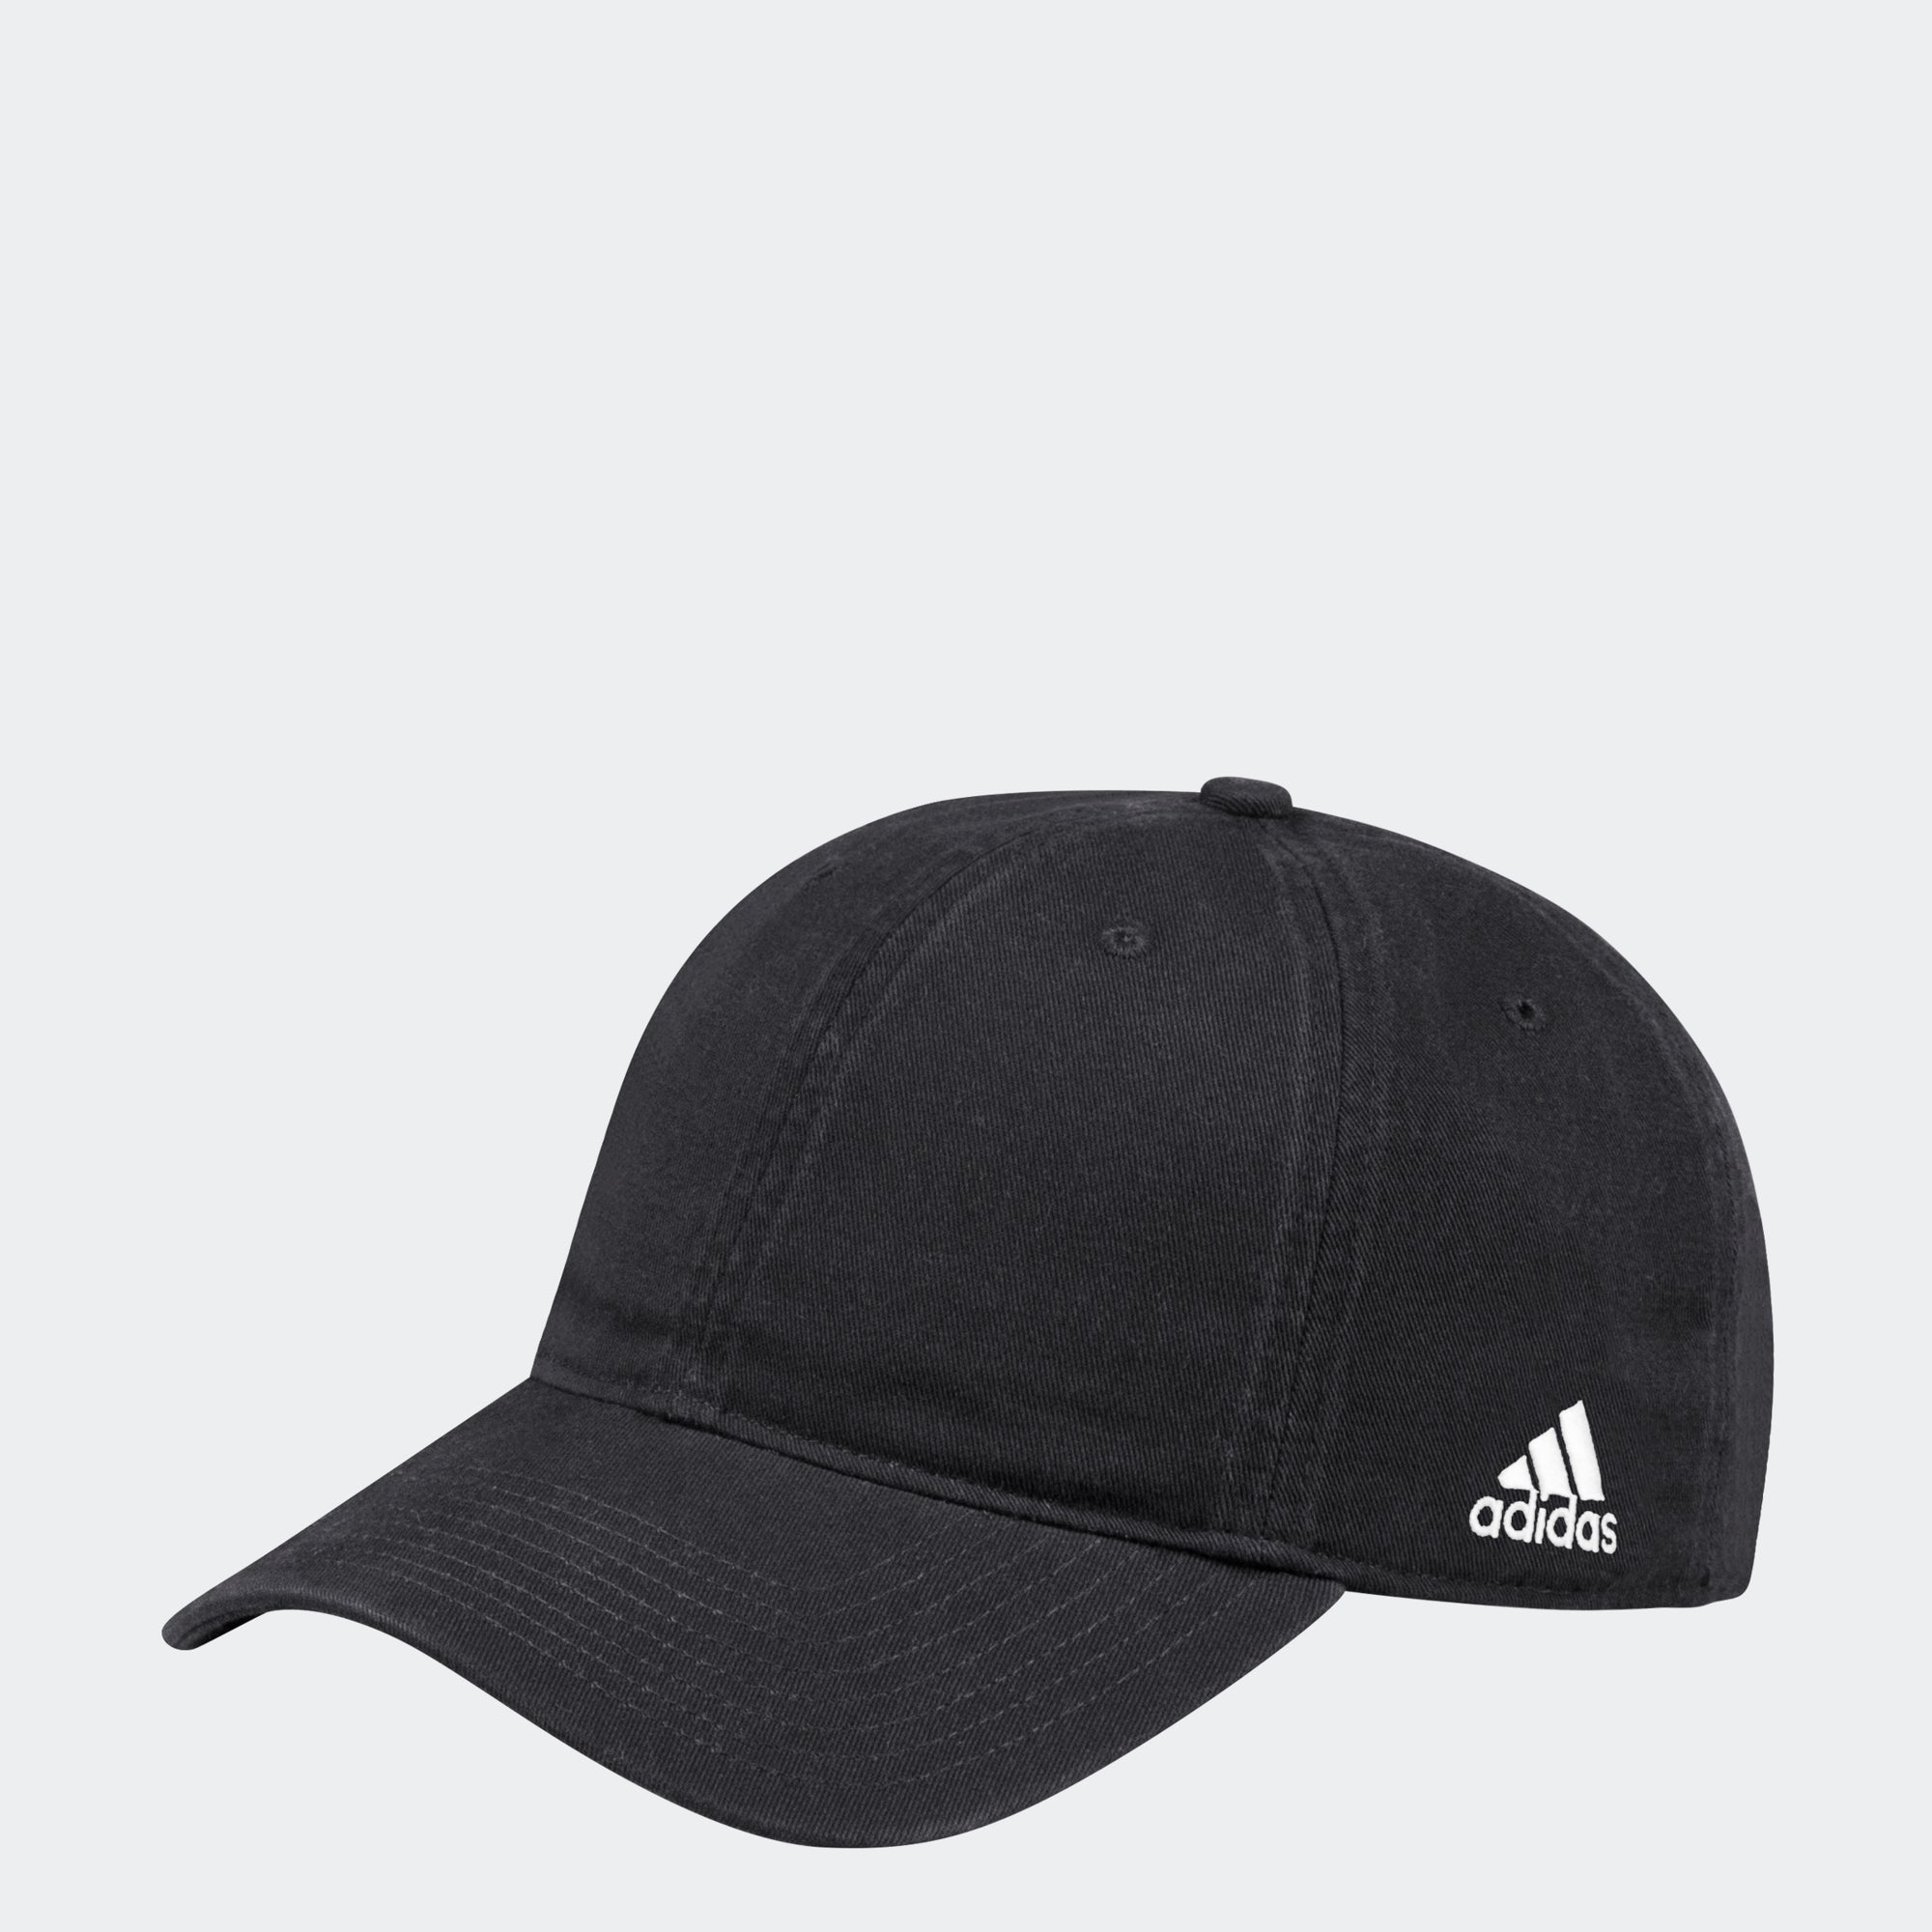 Lids San Jose Sharks adidas Letter Slouch Adjustable Hat - Black